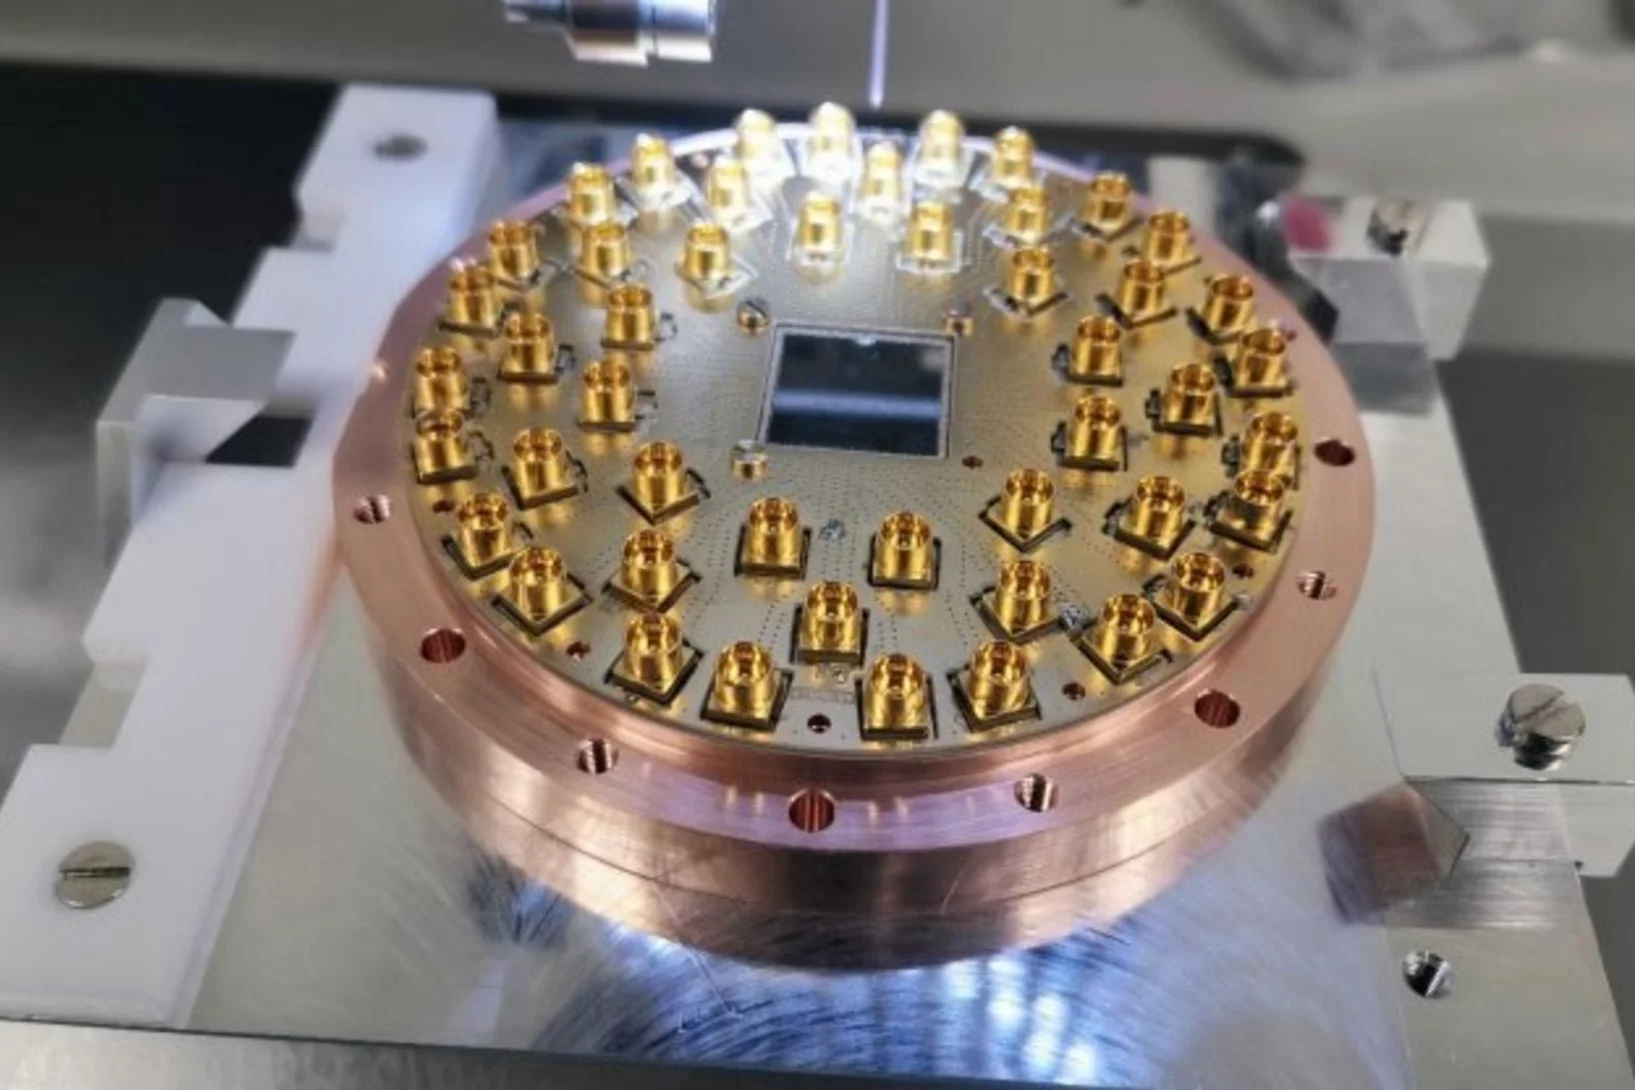 Superconducting circuits chip